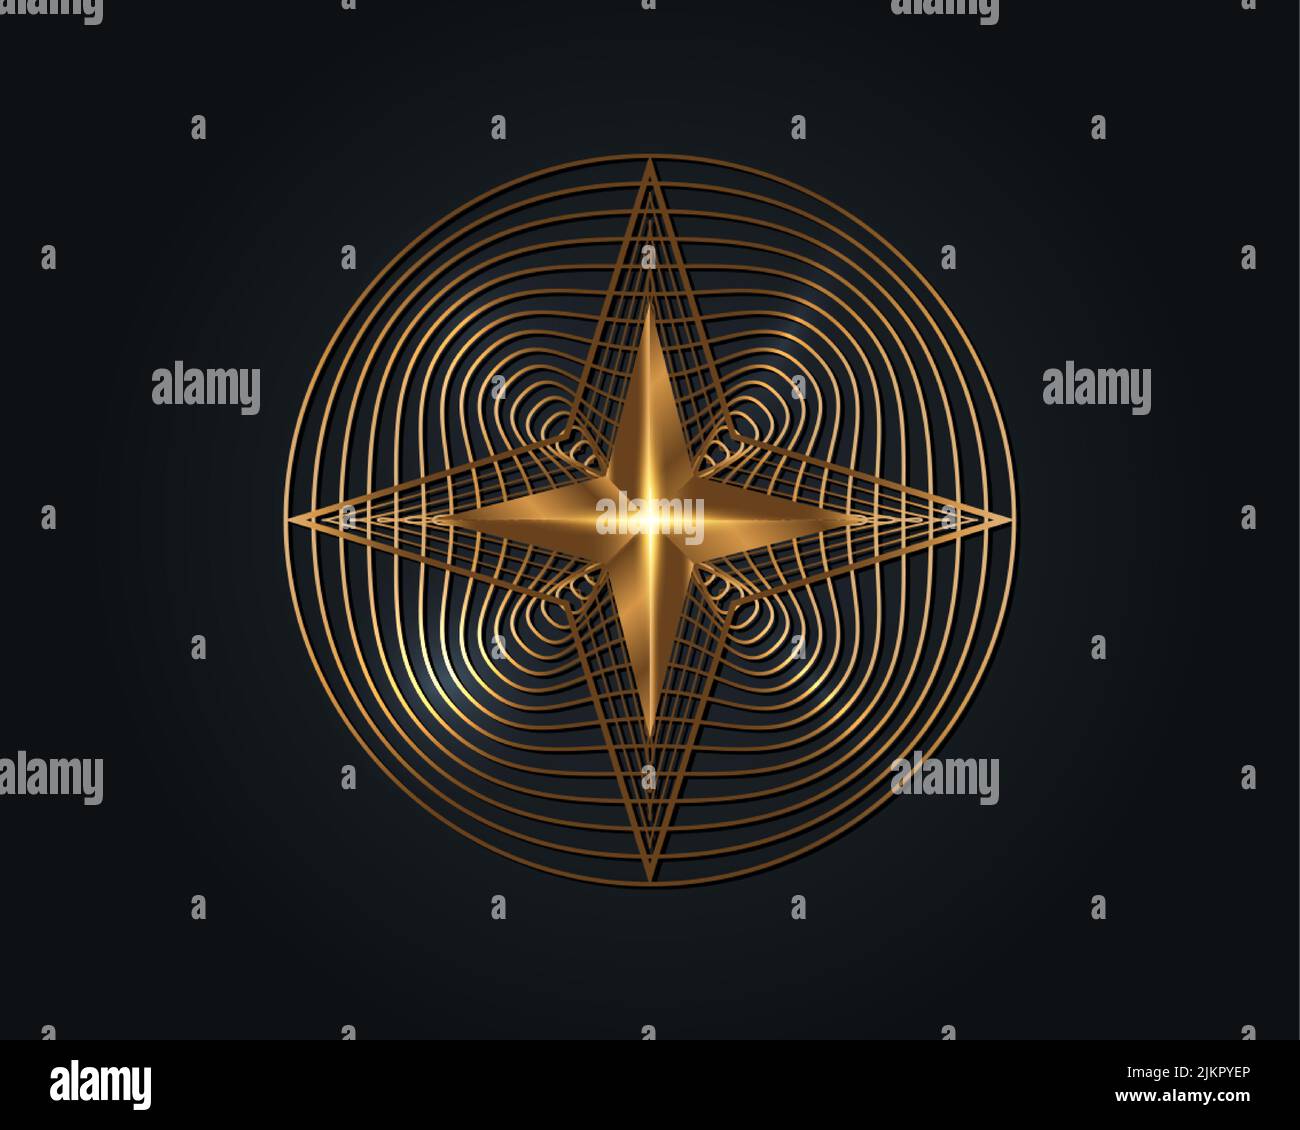 Gold 3D 4 points Star, Golden Circle élégant Vector logo Design, Beauty Decorative logo Template, Luxury Sacred Geometry, motif géométrique rond Illustration de Vecteur